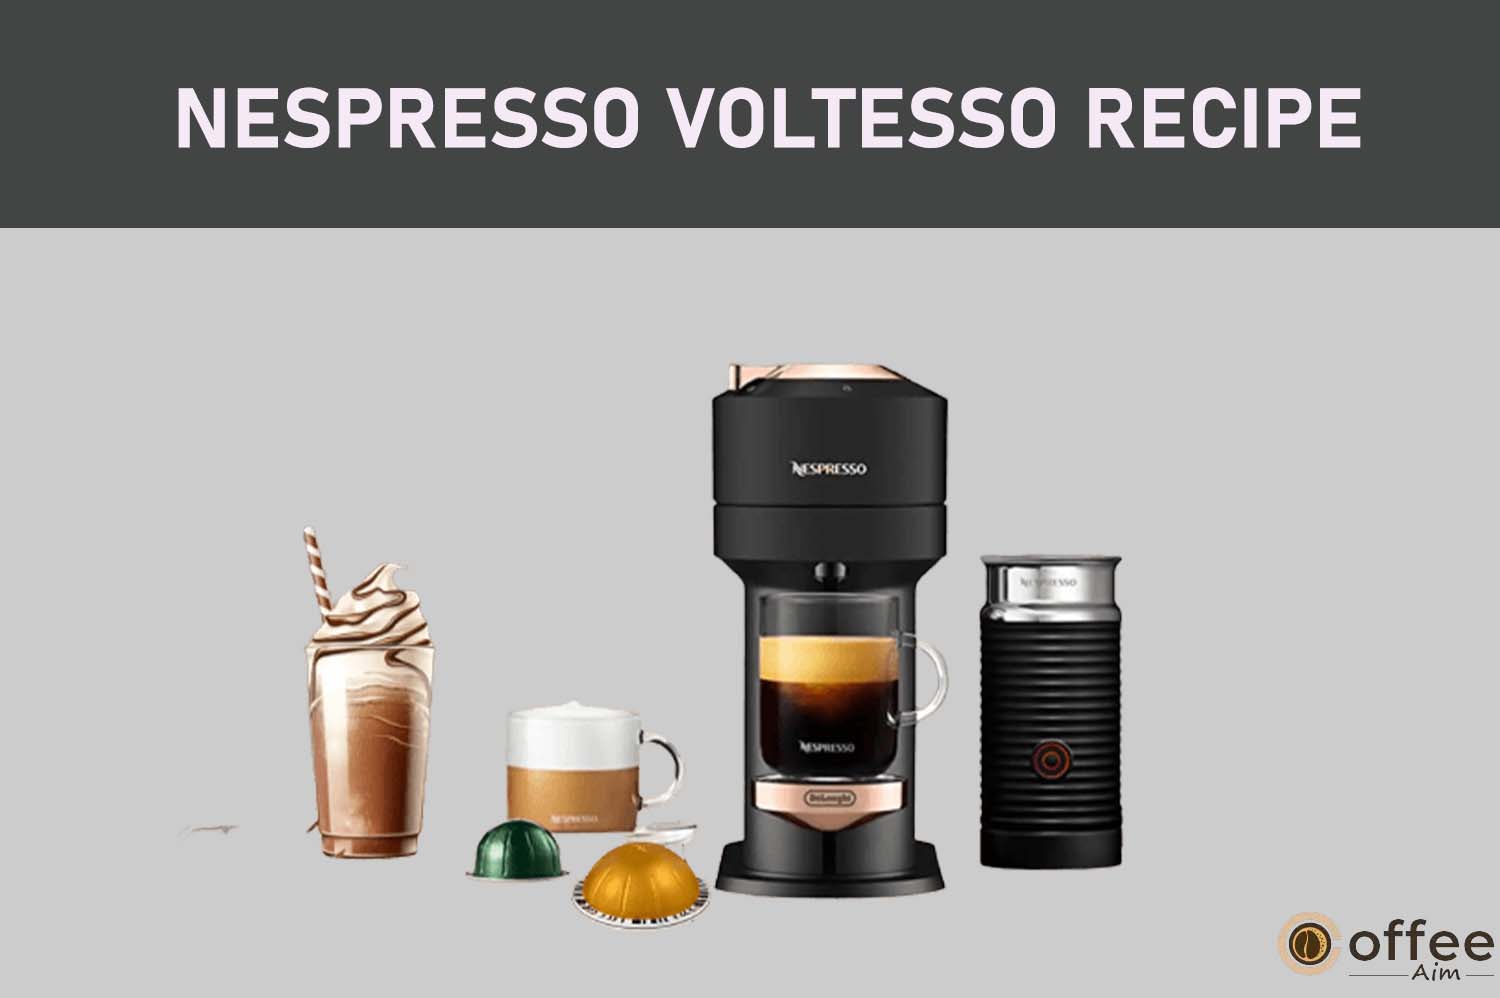 Featured image for the article "Nespresso Voltesso Recipe"